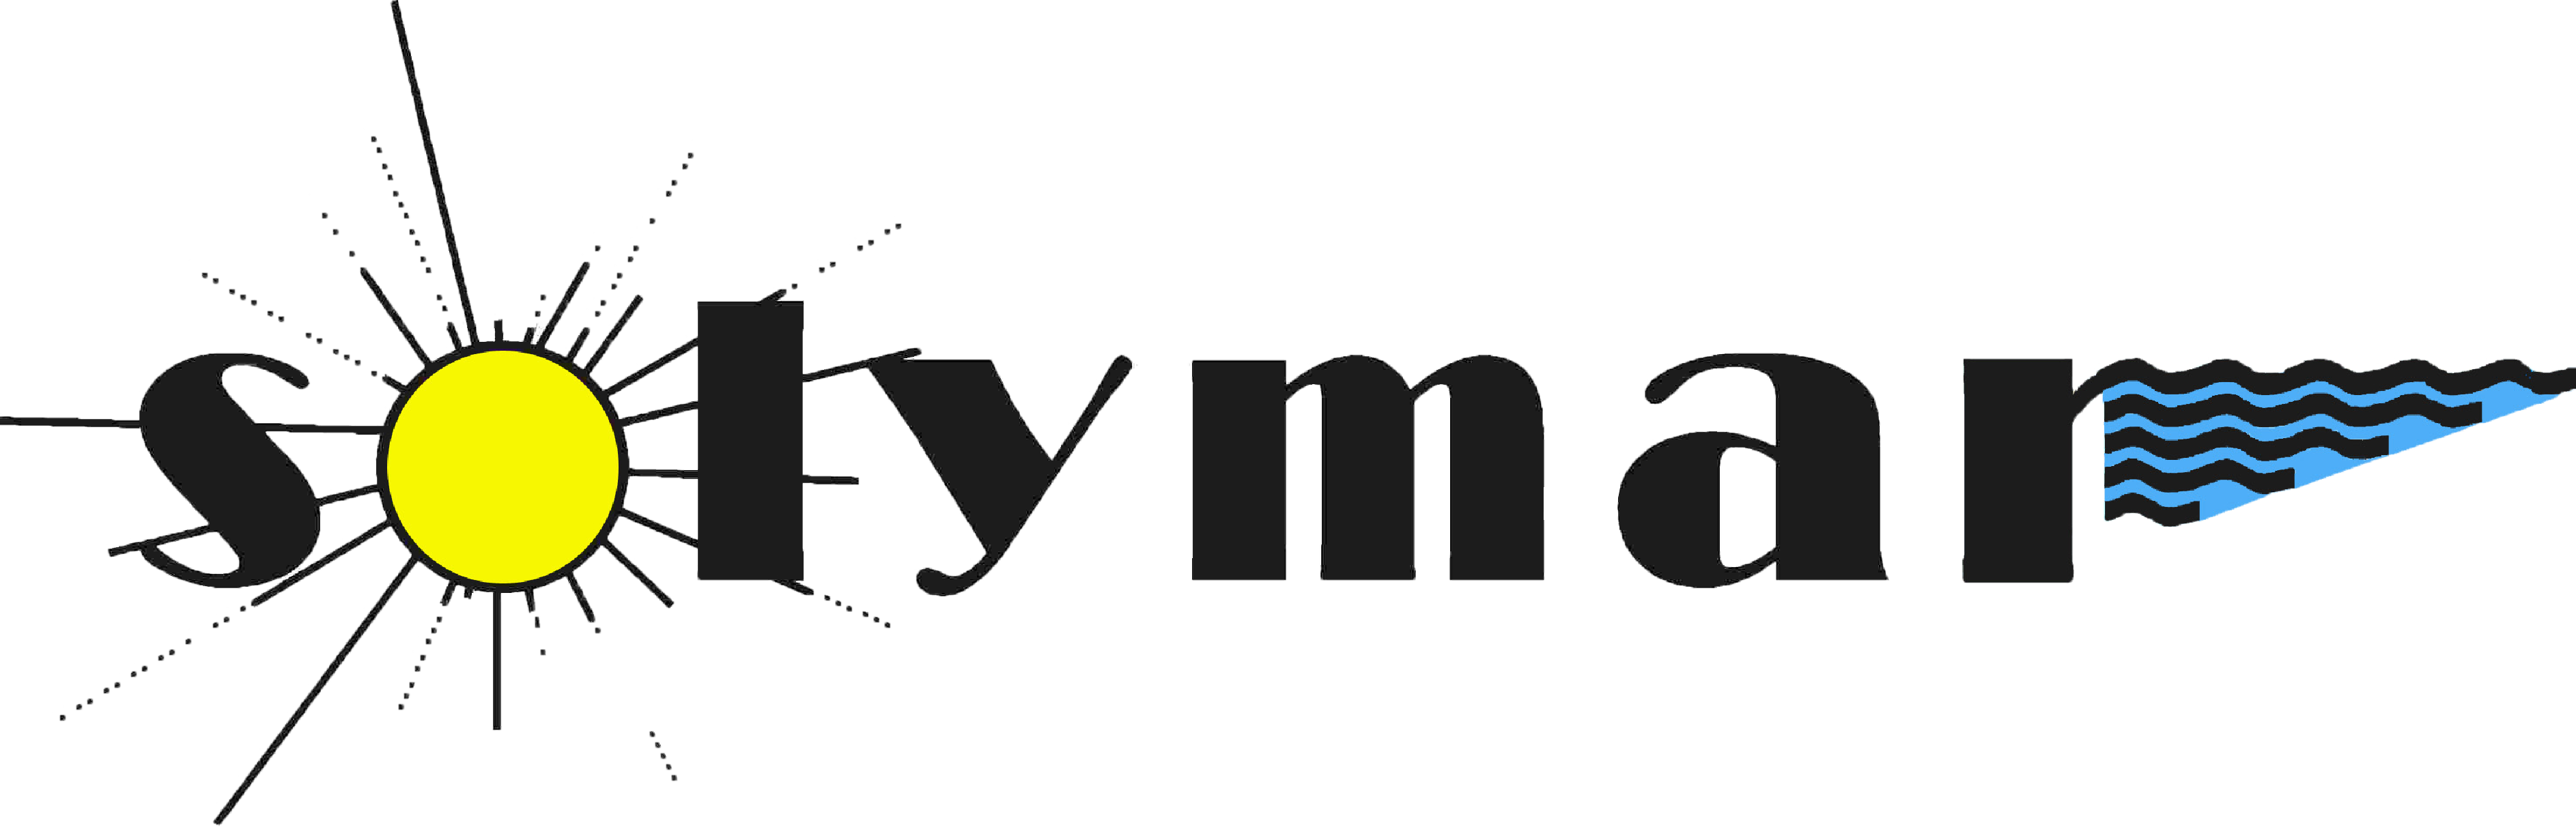 Solymar Logo